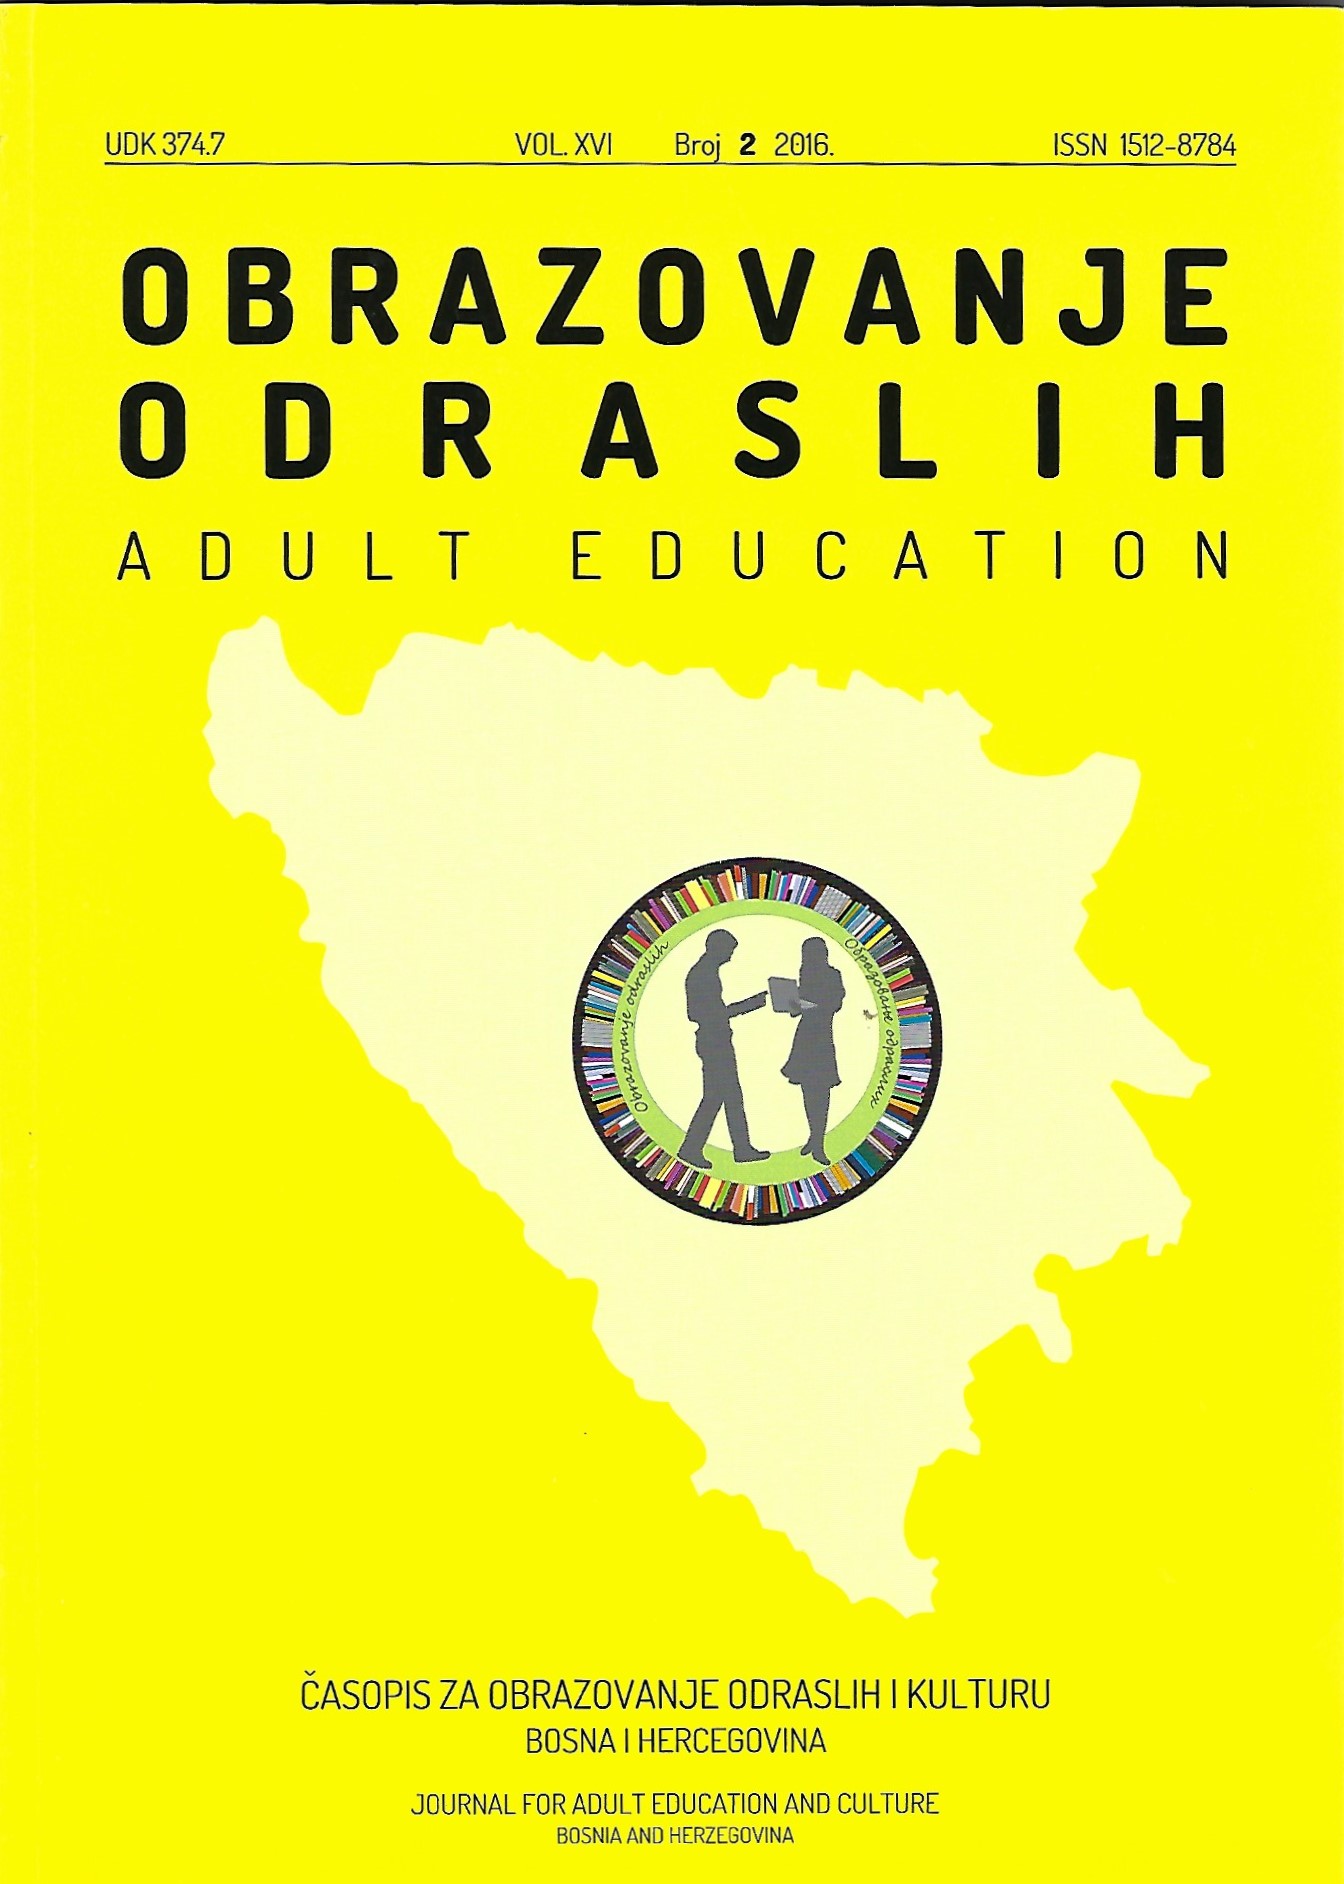 Zastupljenost informacijske i informatičke kompetencije na studijskim programima i izobrazbe nastavnika na Univerzitetu u Sarajevu